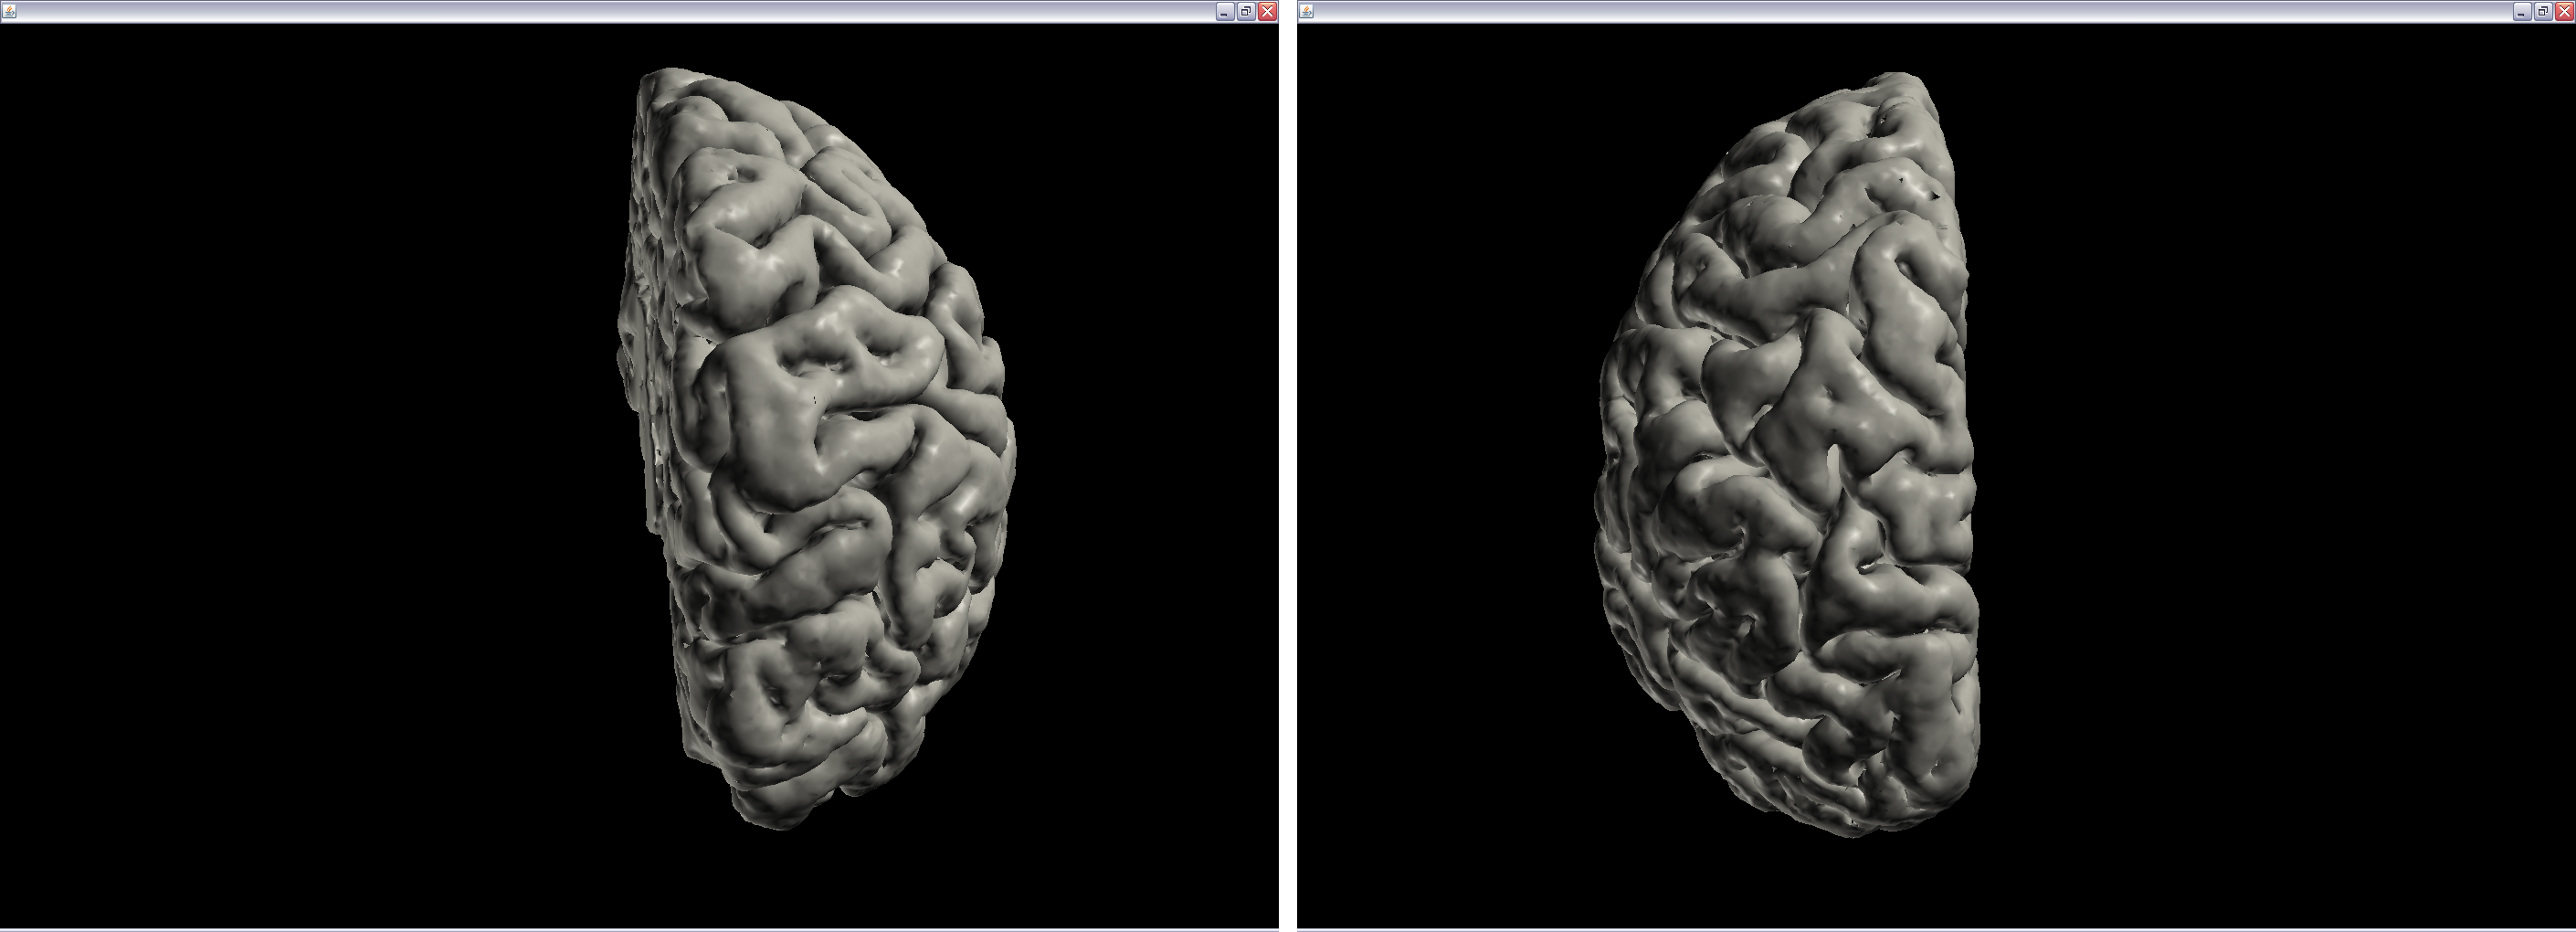 9.6 Visualisering af cortexmodeller På figur 9.8 ses en visualisering af hele cortex cerebri og på figur 9.9 ses, en visning af de enkelte hemisfærer for cortex cerebri. Figur 9.